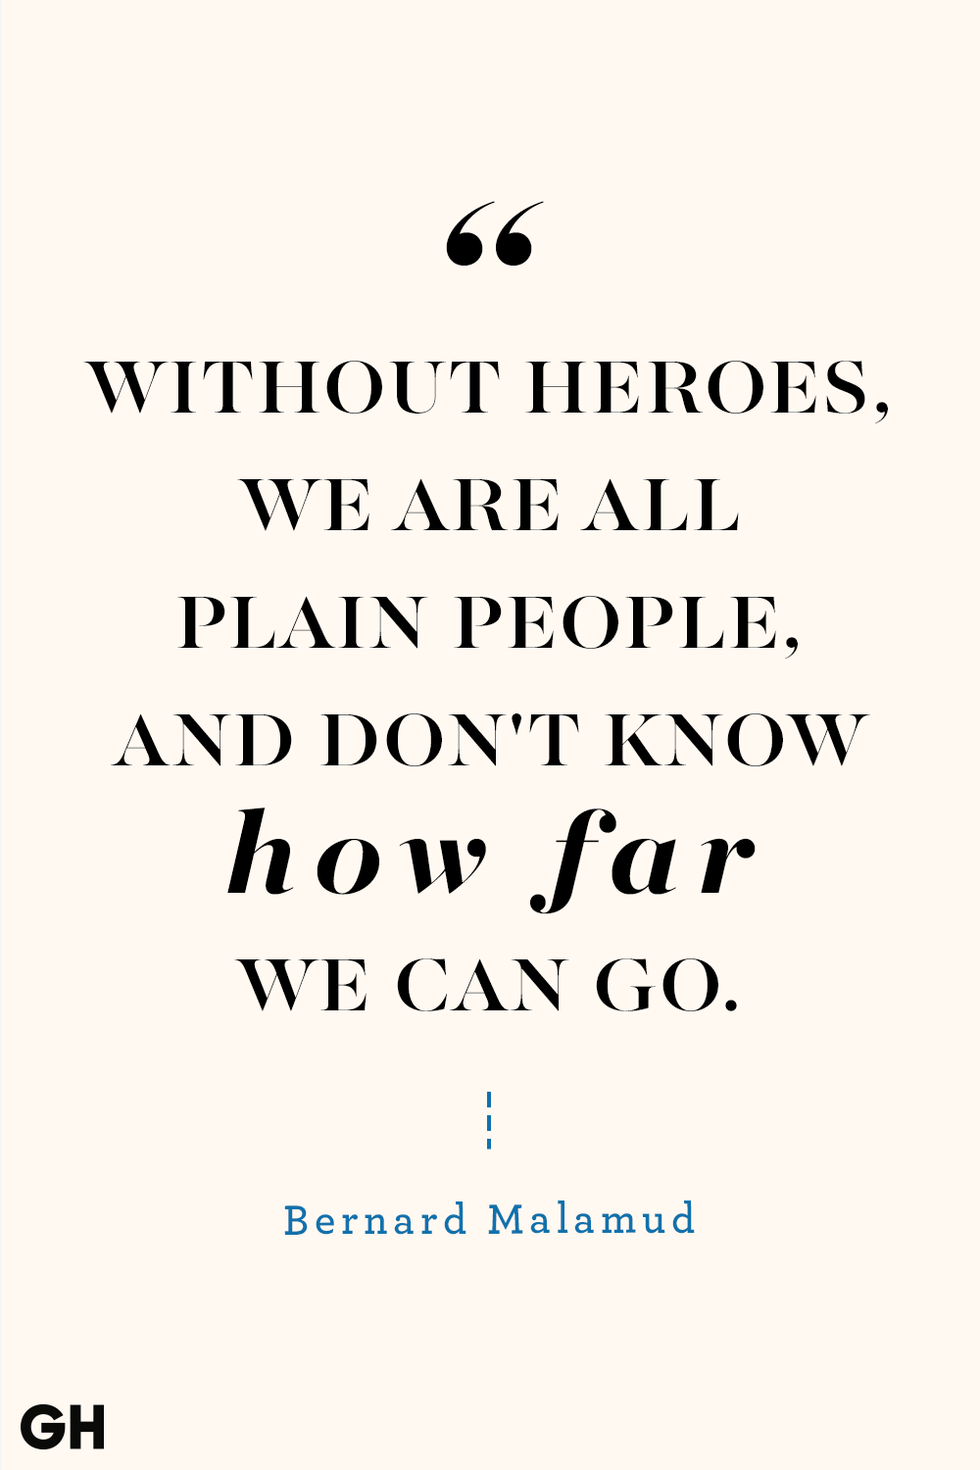 Memorial Day Quotes Bernard Malamud